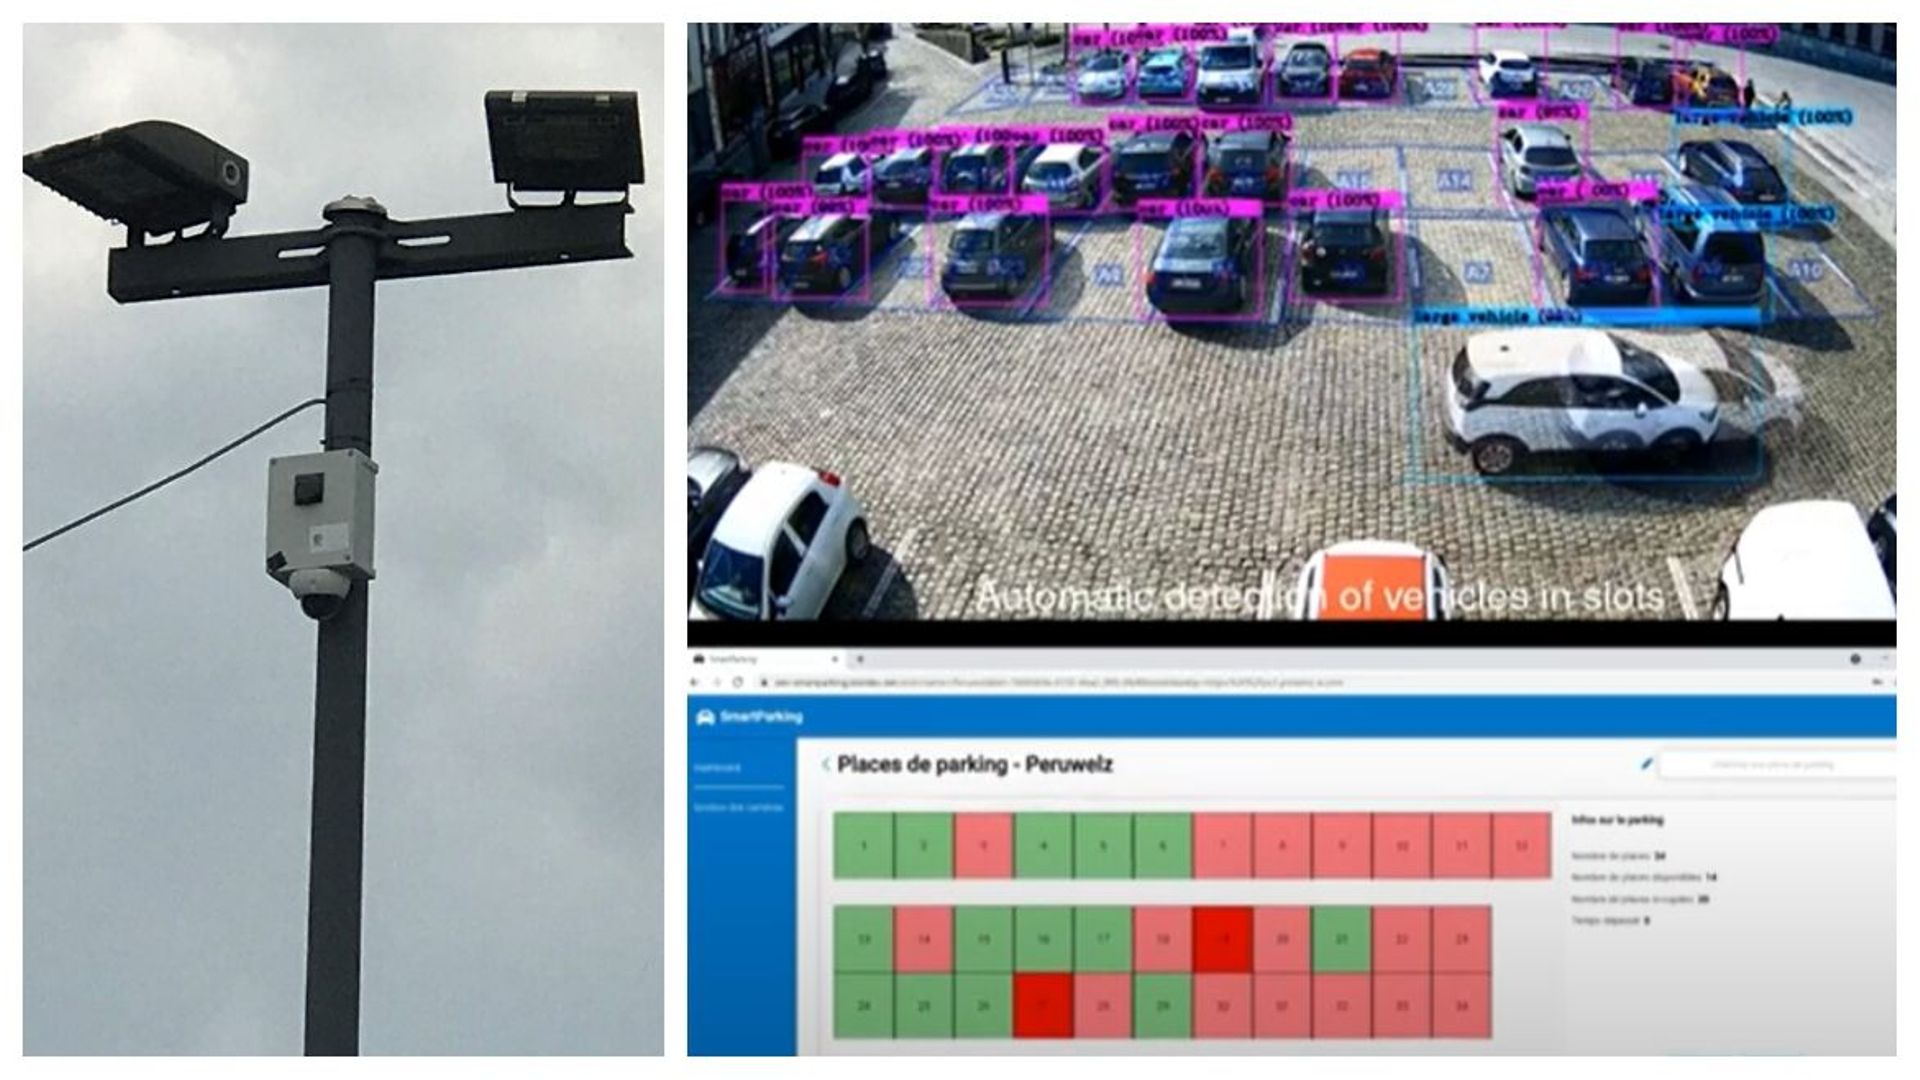 La caméra récolte des données sur l'occupation des places de parking.